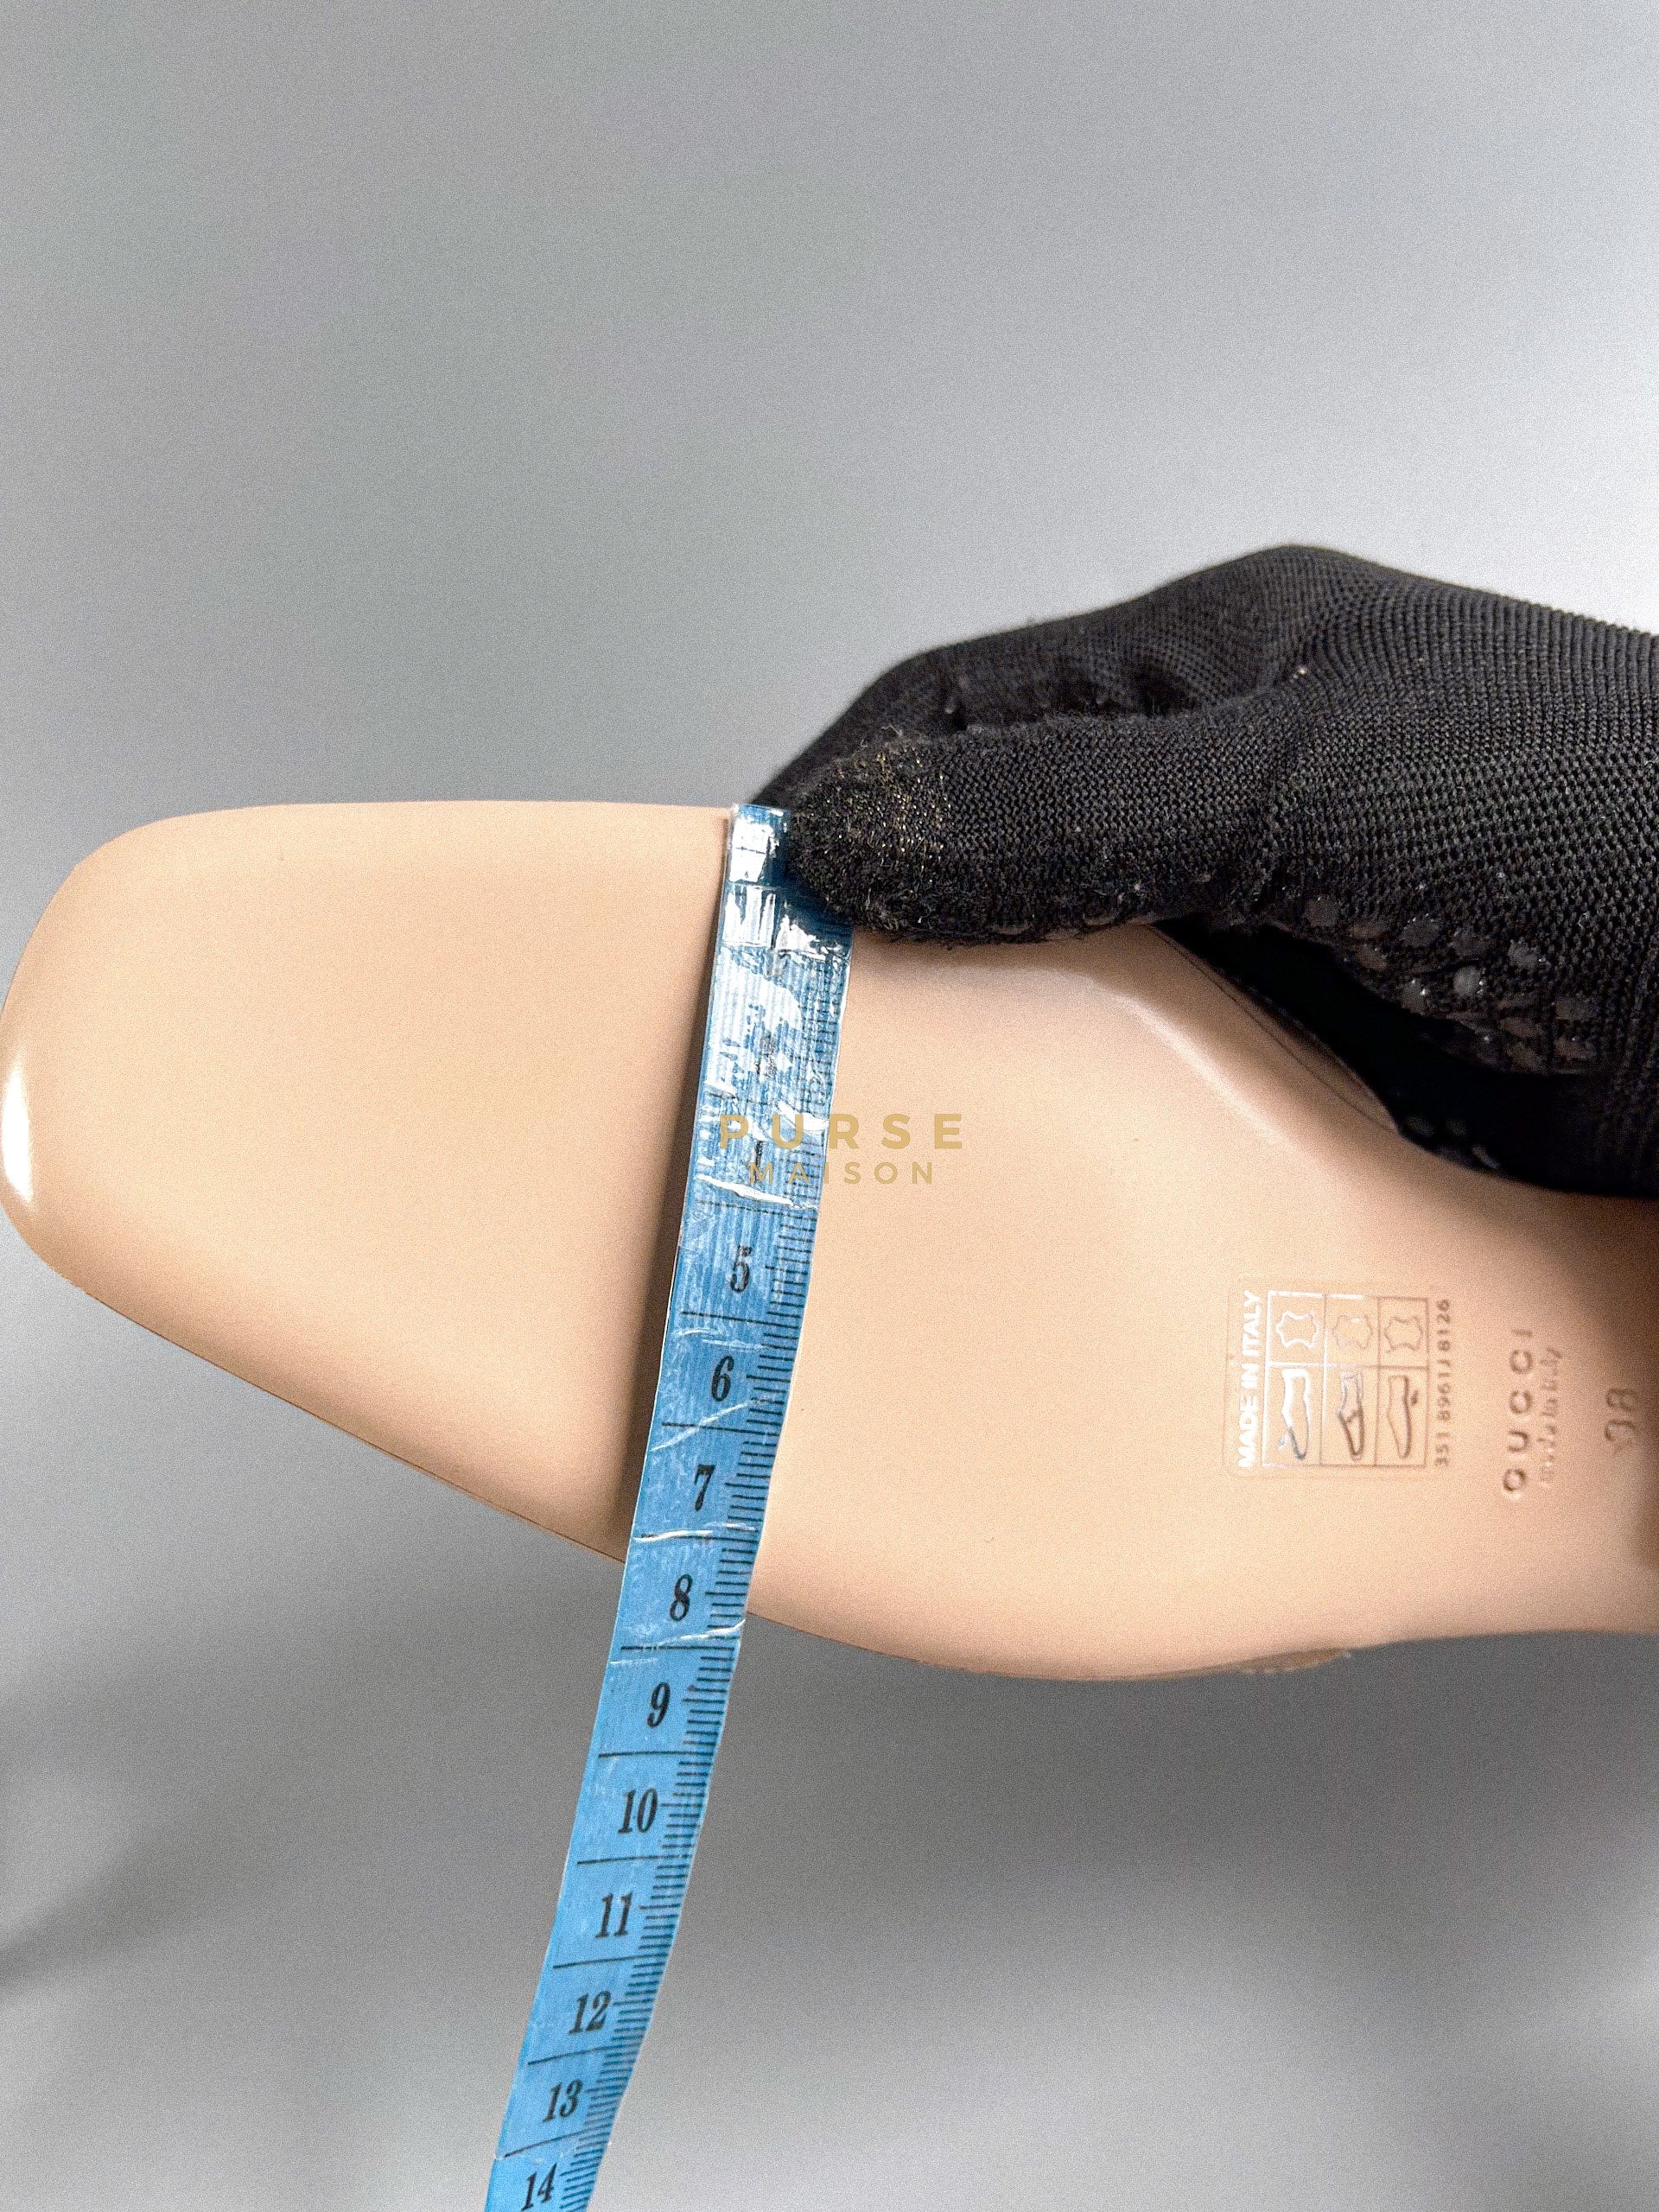 Double G Beige Patent Leather Ballerina Sandals (Size 38 EU, 26cm) | Purse Maison Luxury Bags Shop